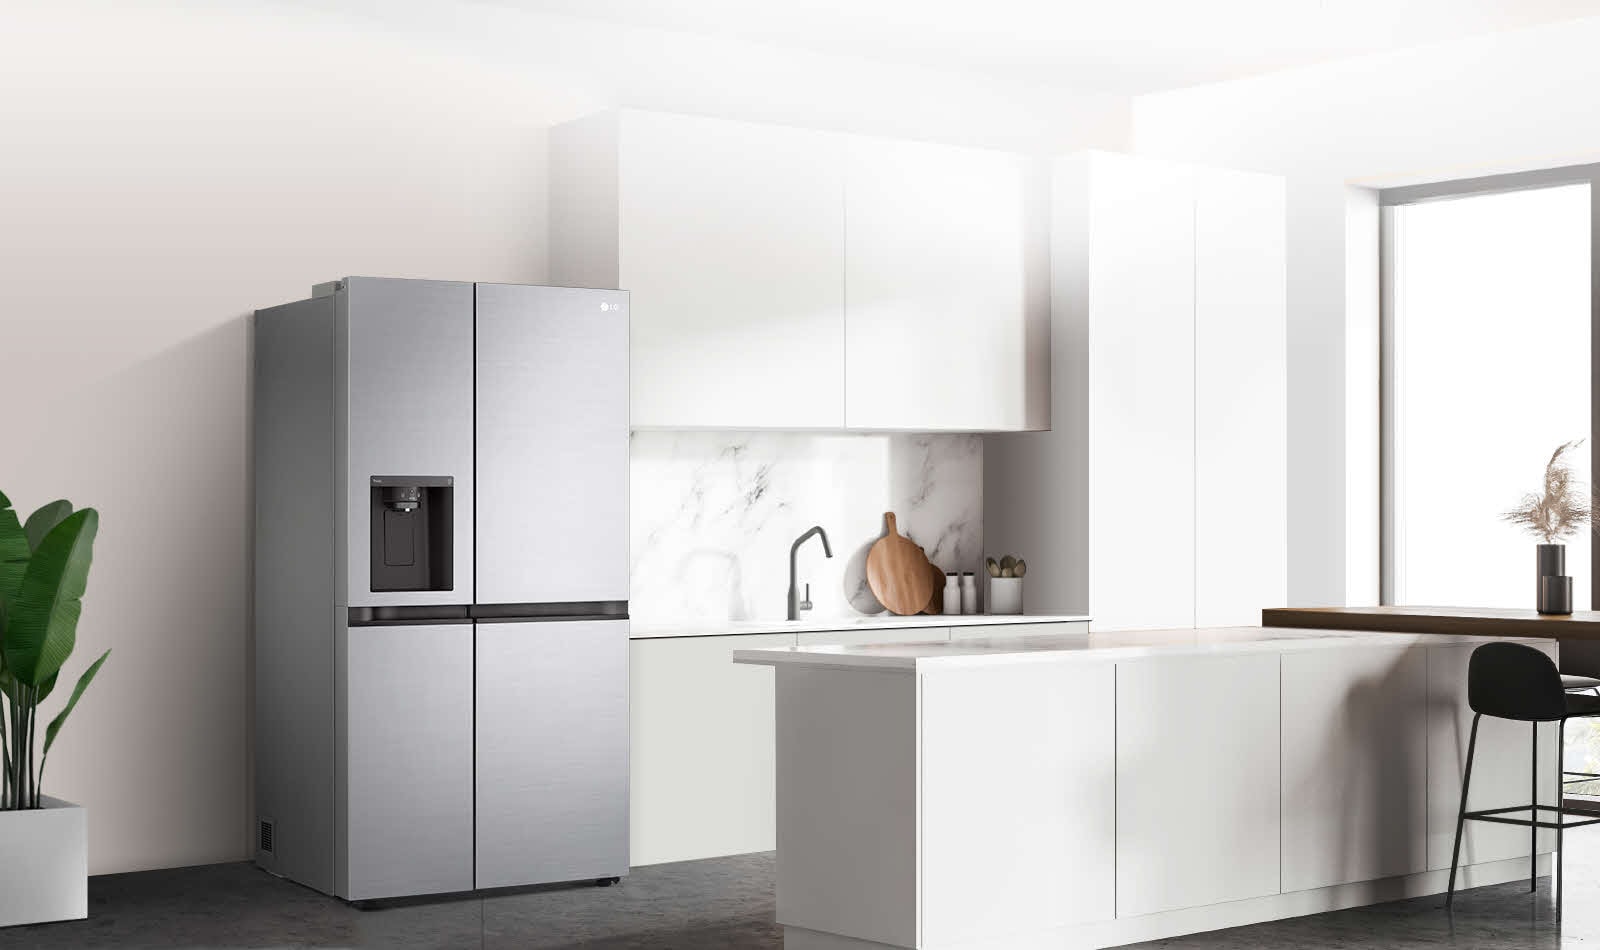 Seitenansicht einer Küche mit eingebautem grauen Kühlschrank.